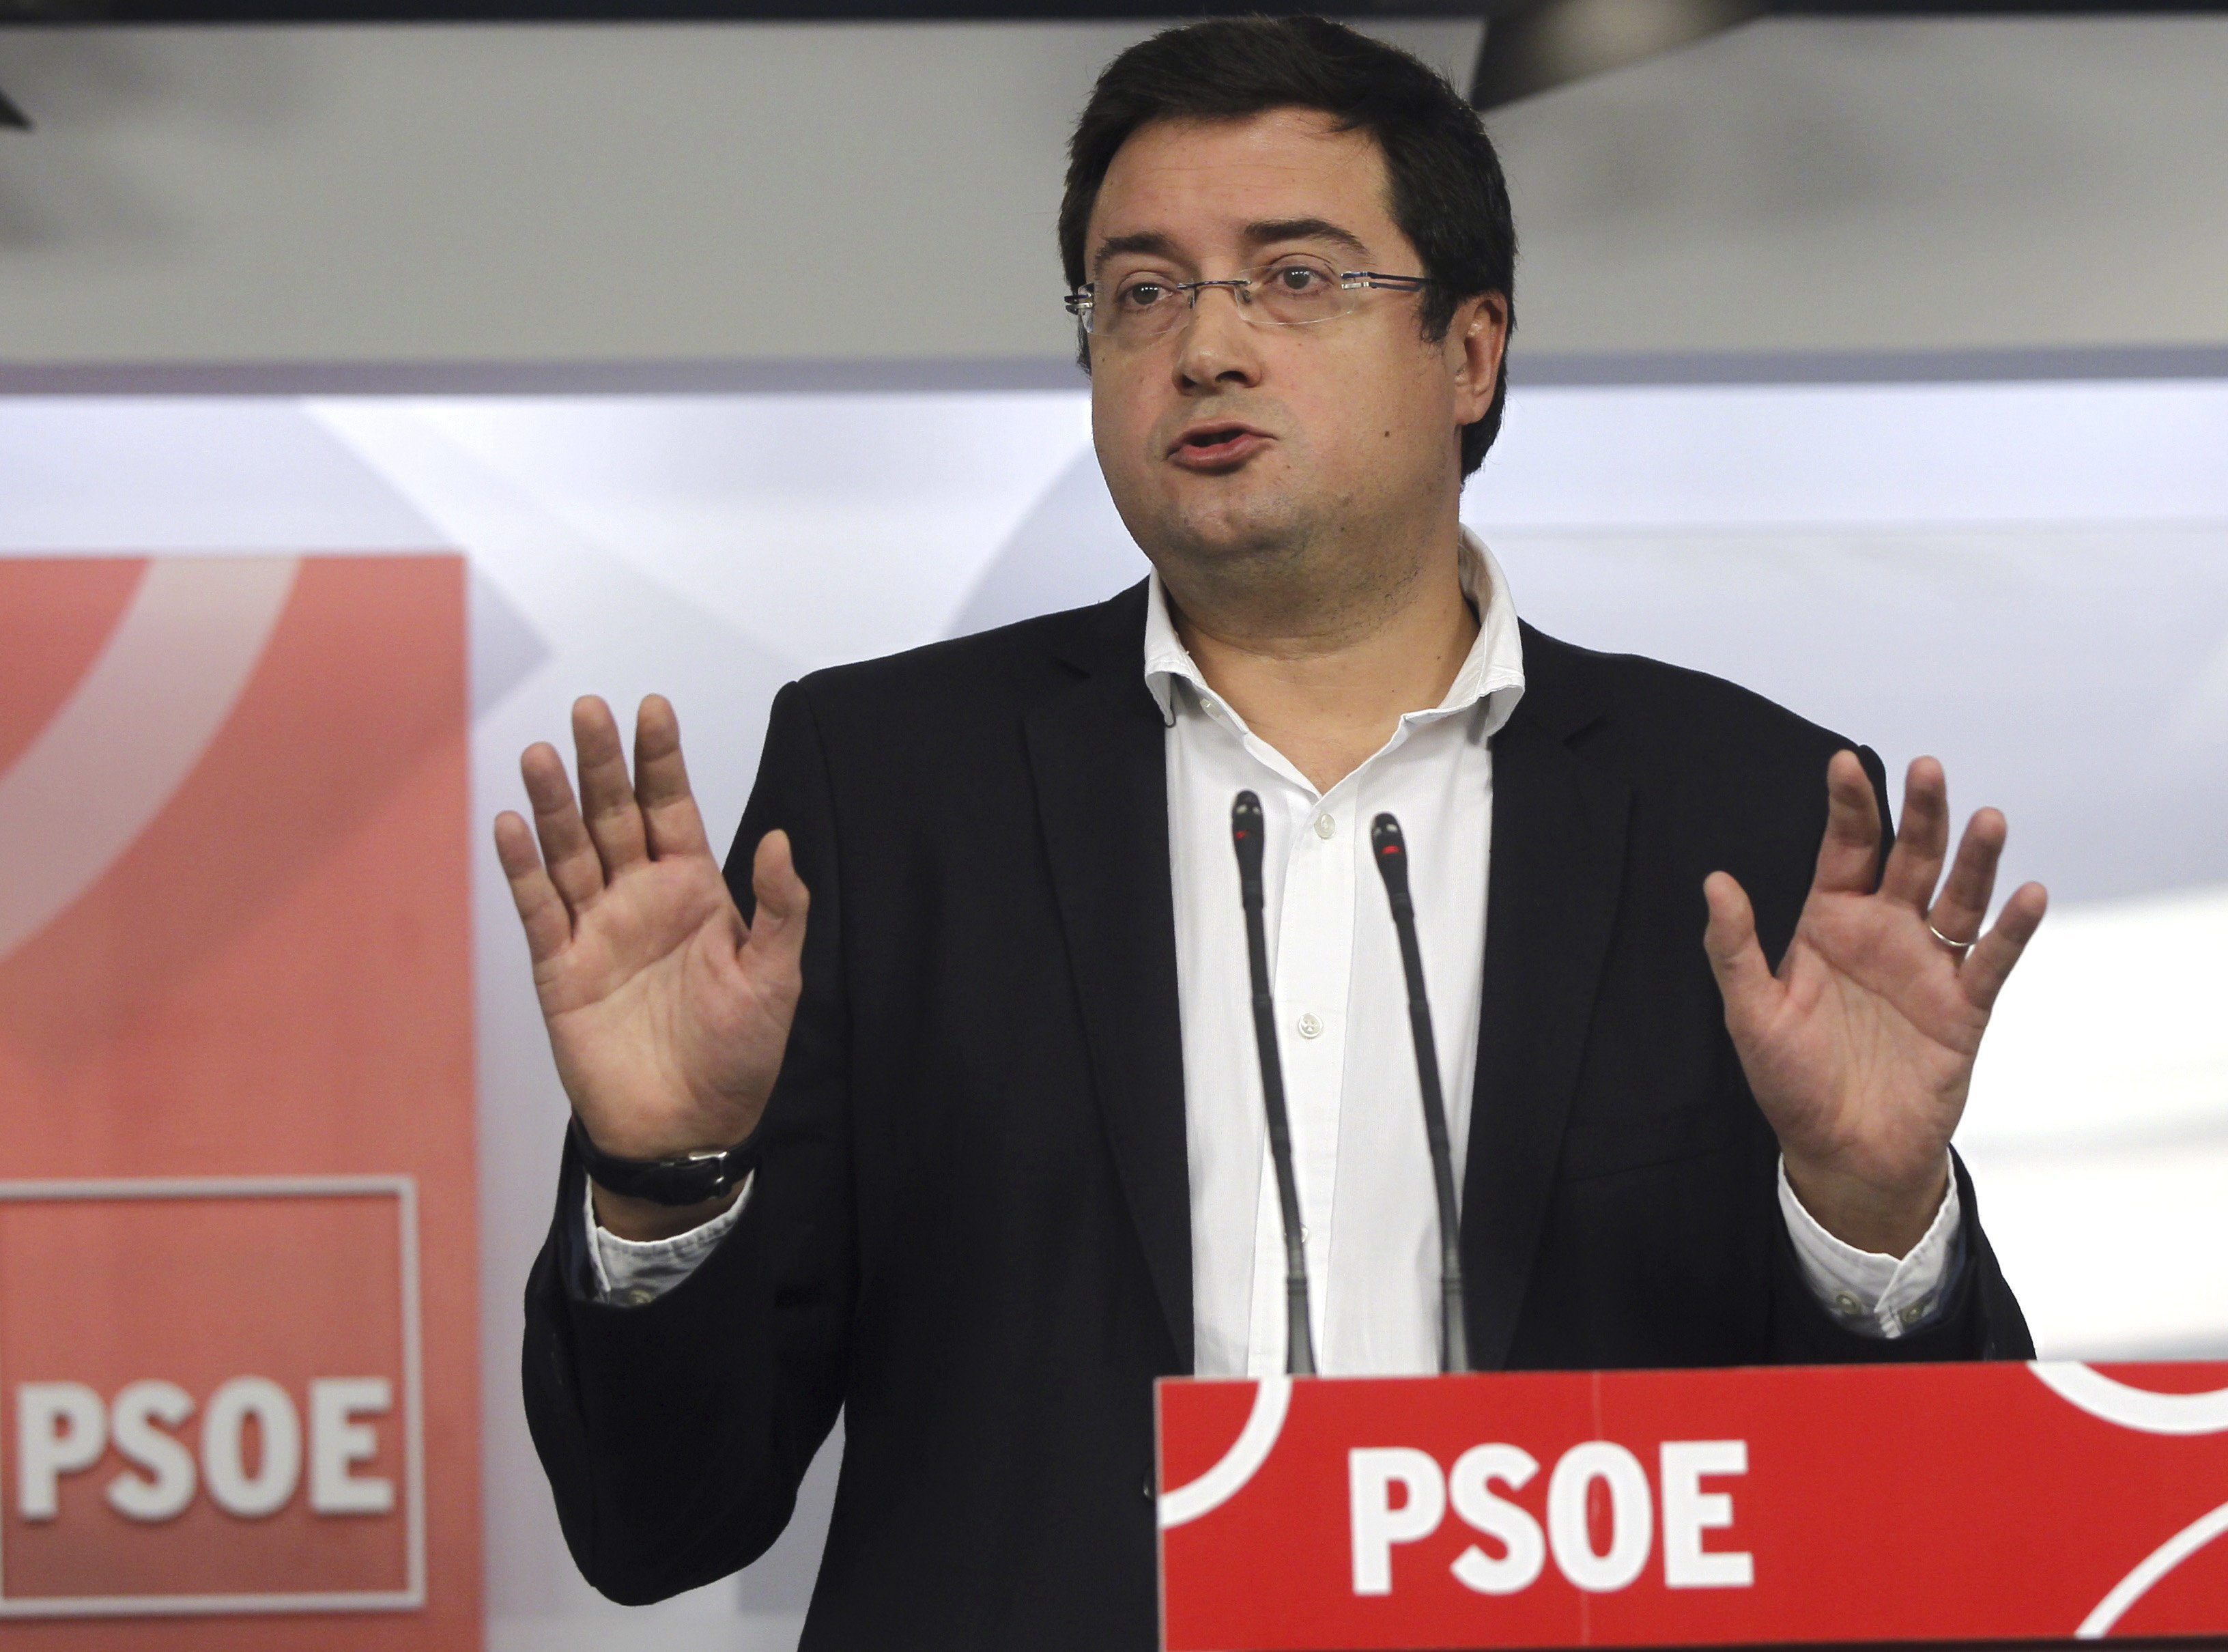 El PSOE busca fórmulas para unas primarias «lo más abiertas posible»